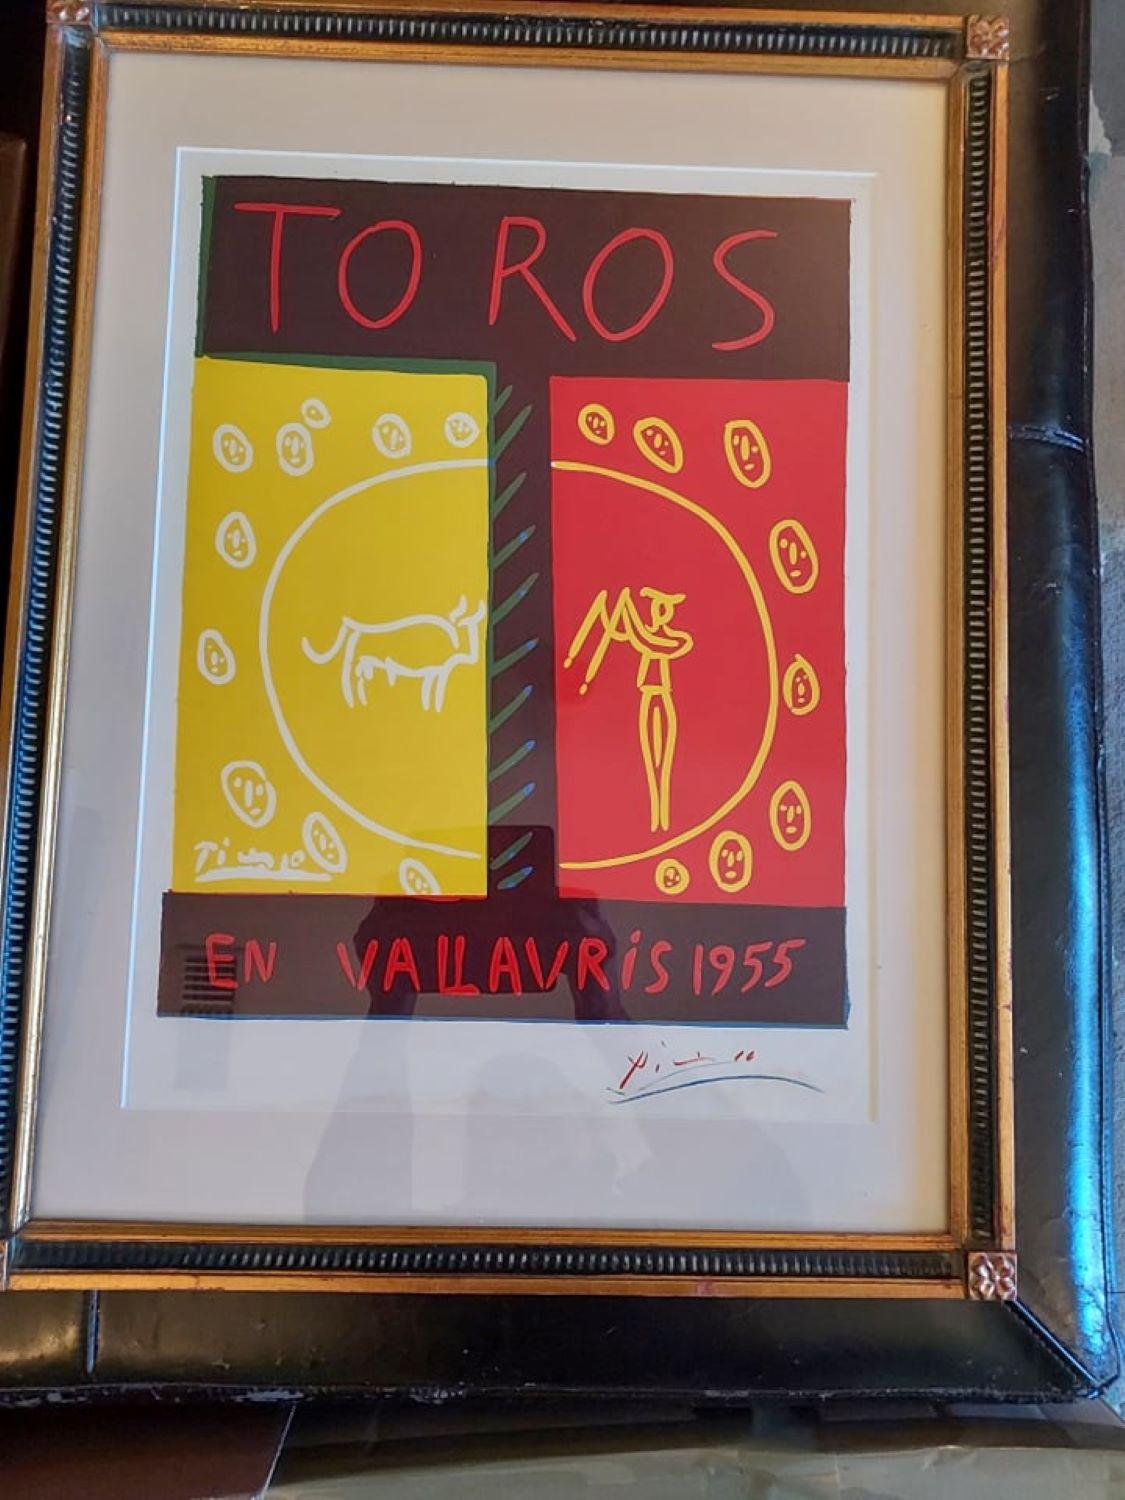 Pablo Picasso, Toros en Vallauris (Bulls in Vallauris), 1955 4